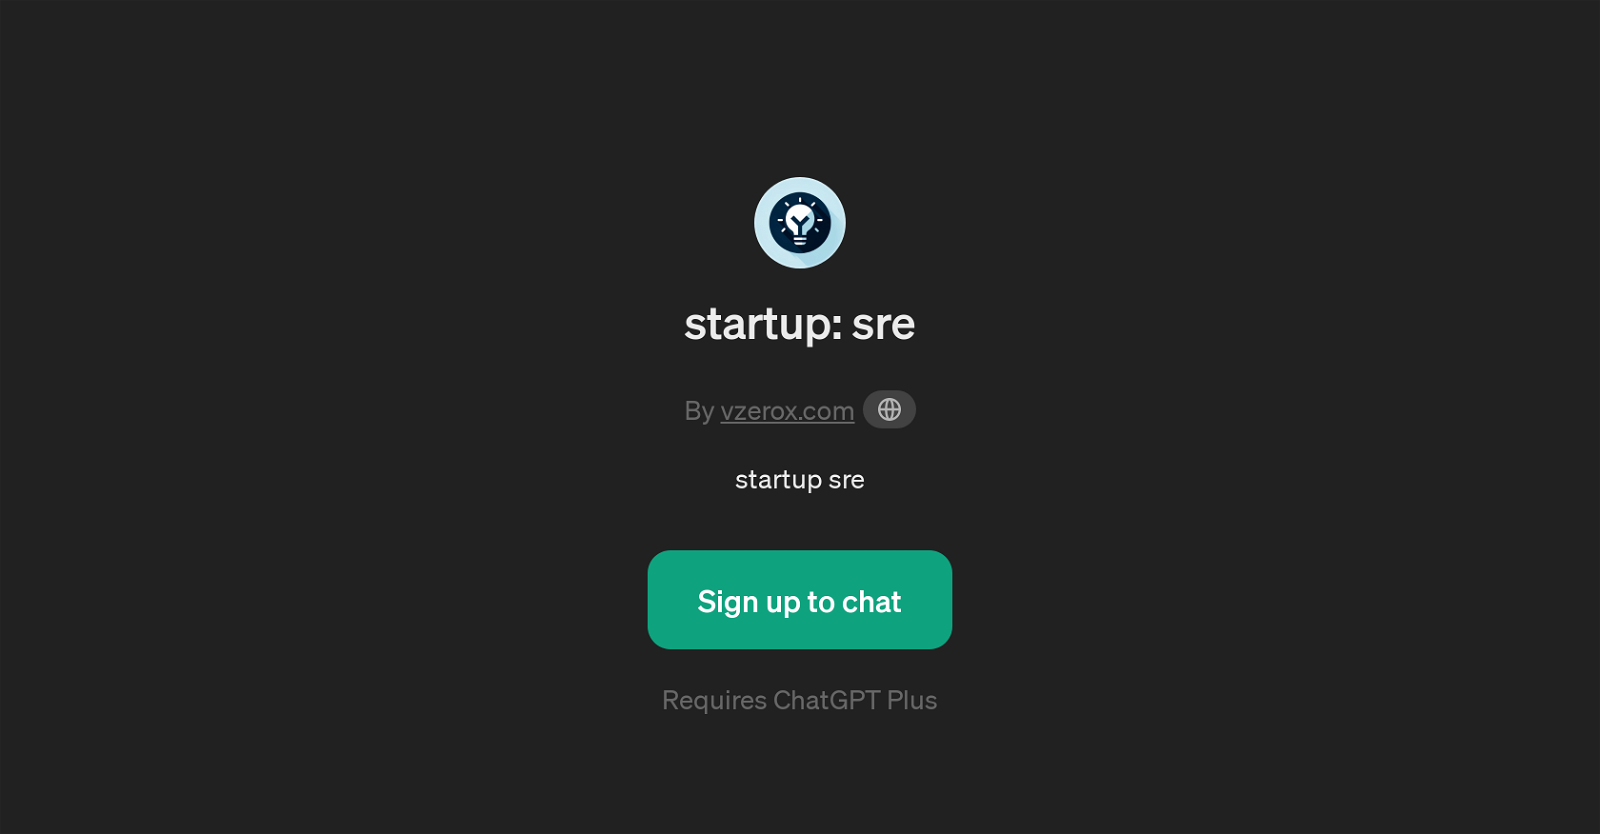 startup: sre website